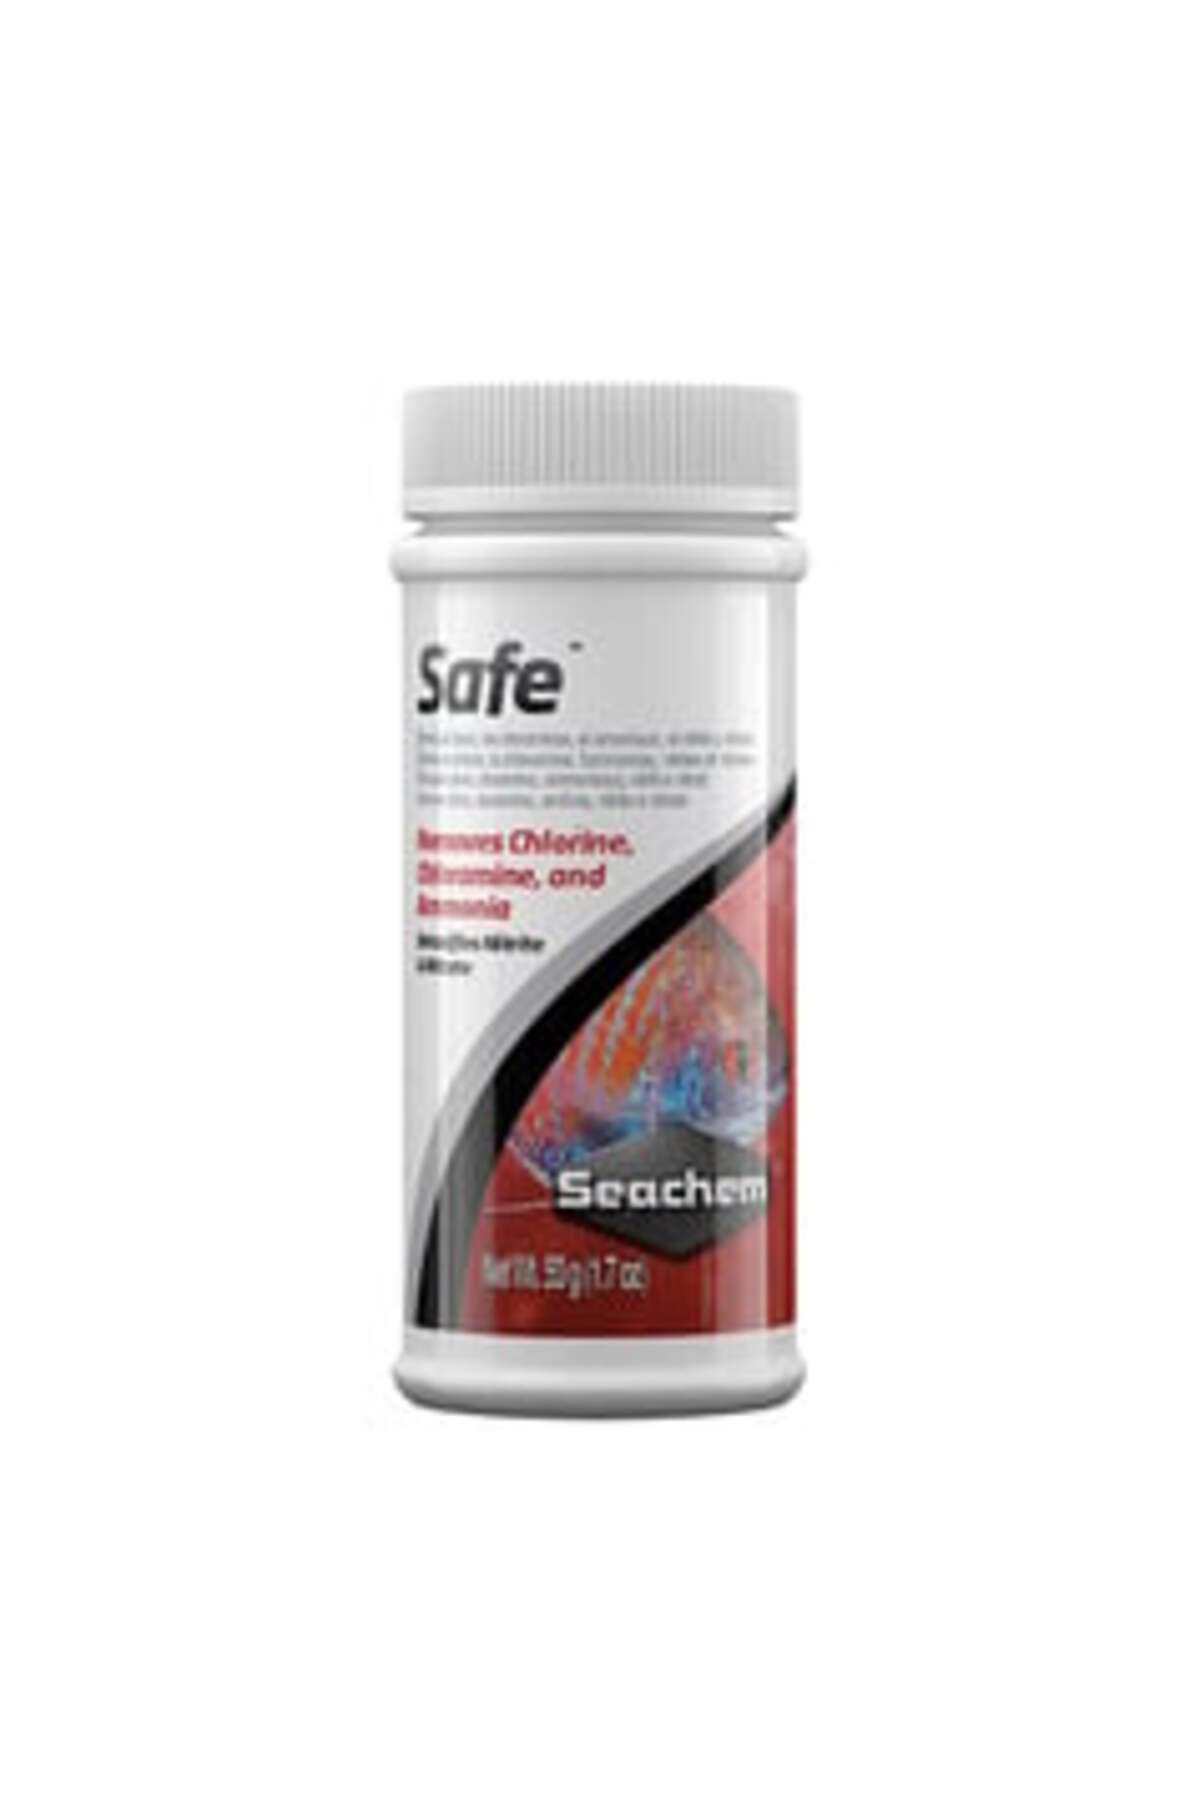 Seachem Safe Akvaryum Balıkları için Klor Giderici ( 1 ADET )